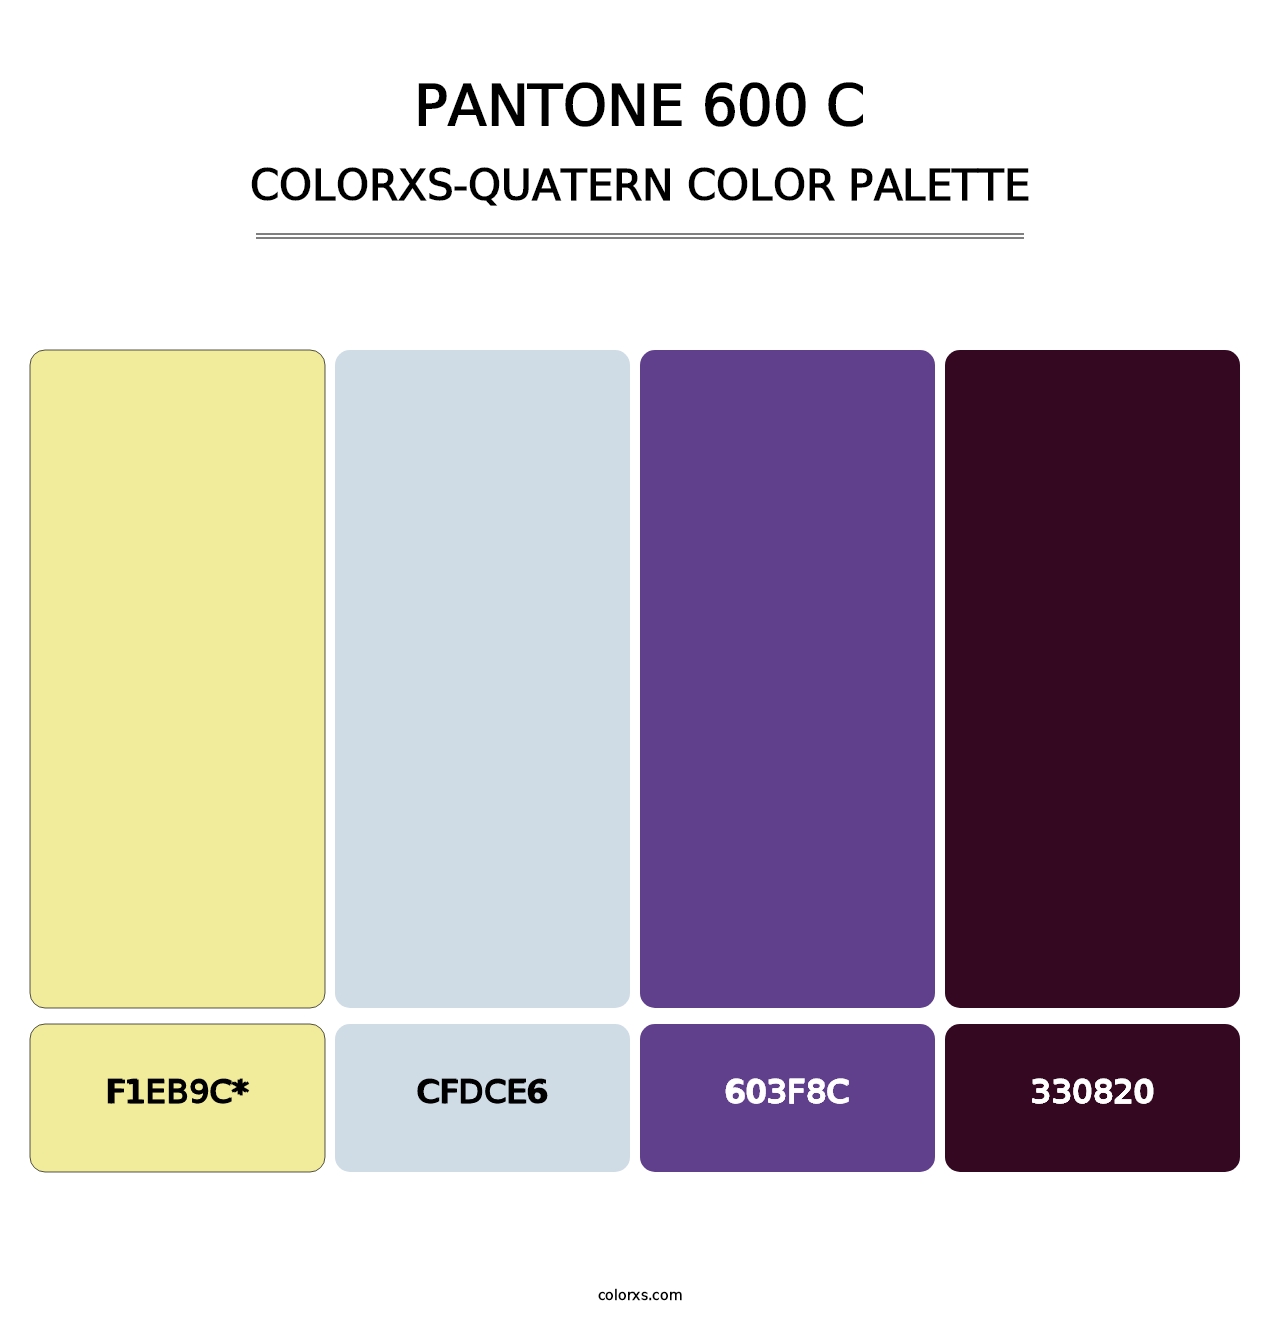 PANTONE 600 C - Colorxs Quatern Palette